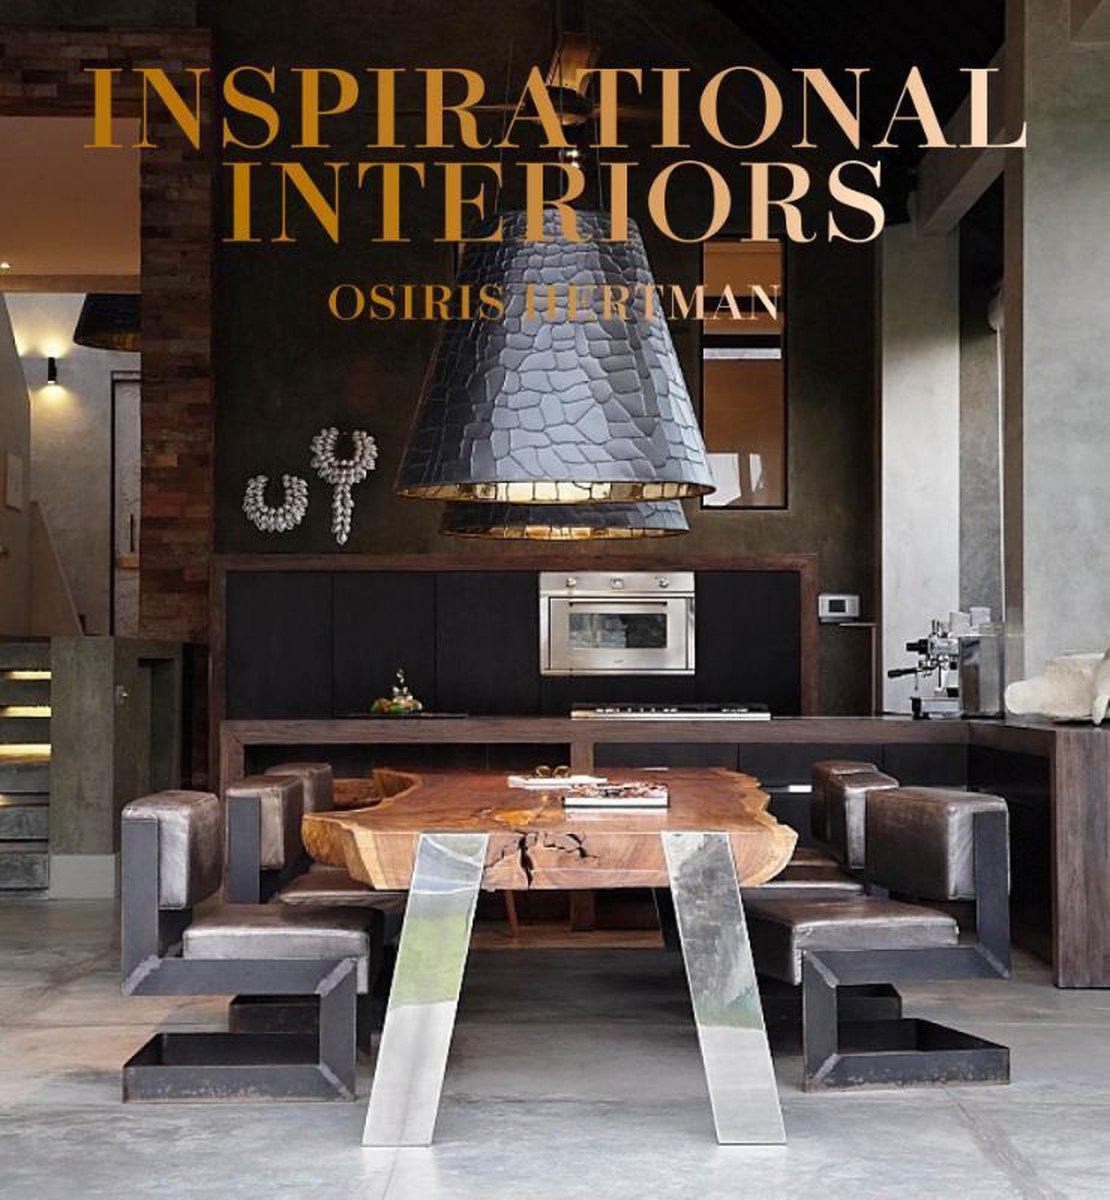 Osiris Herman: Inspirational Interiors